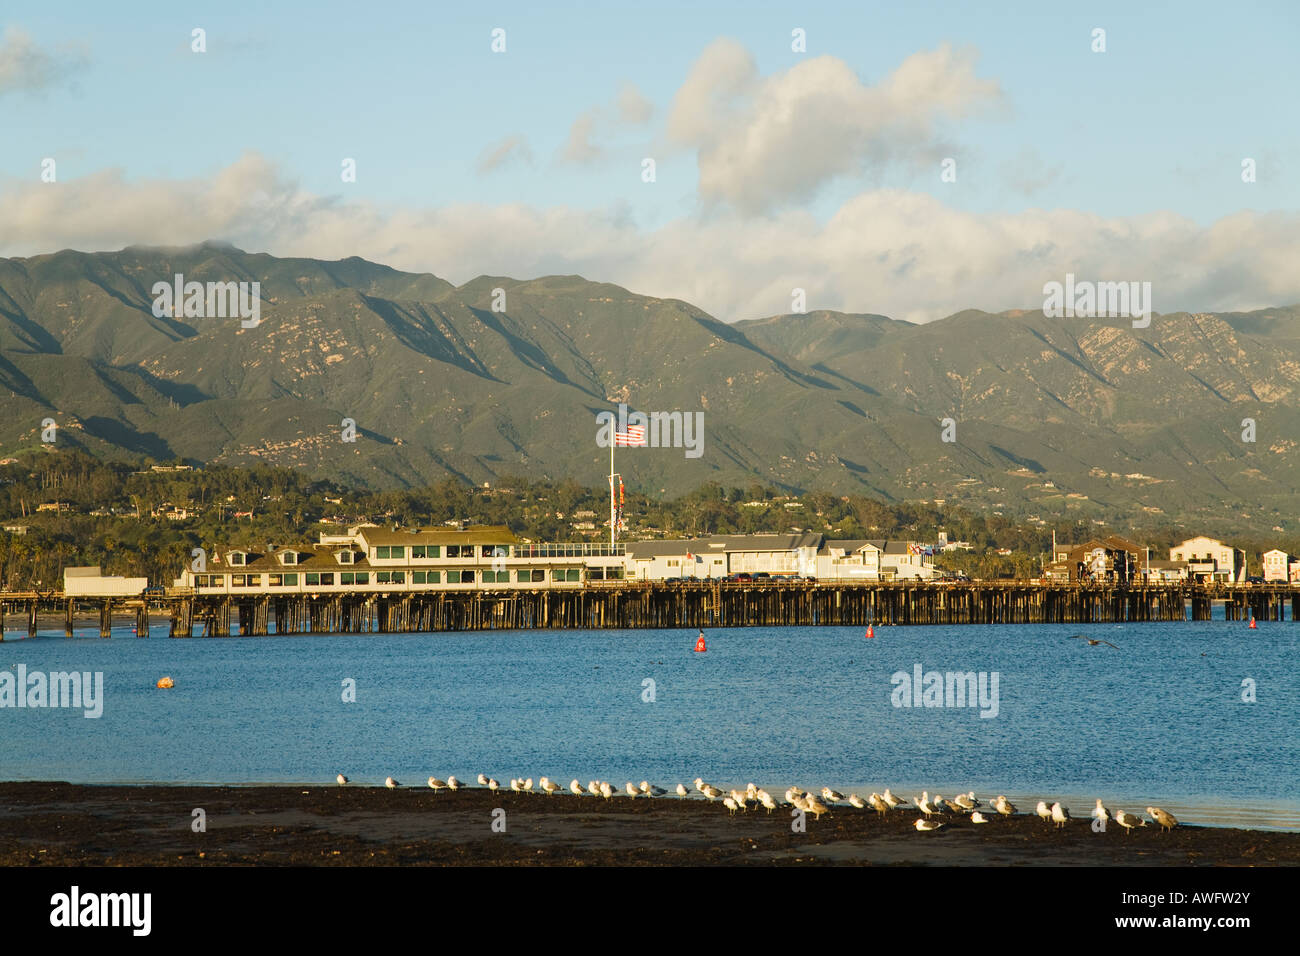 CALIFORNIA Santa Barbara mouettes bord de l'eau à marée basse plage ouest Stearns Wharf et montagnes en arrière-plan Banque D'Images